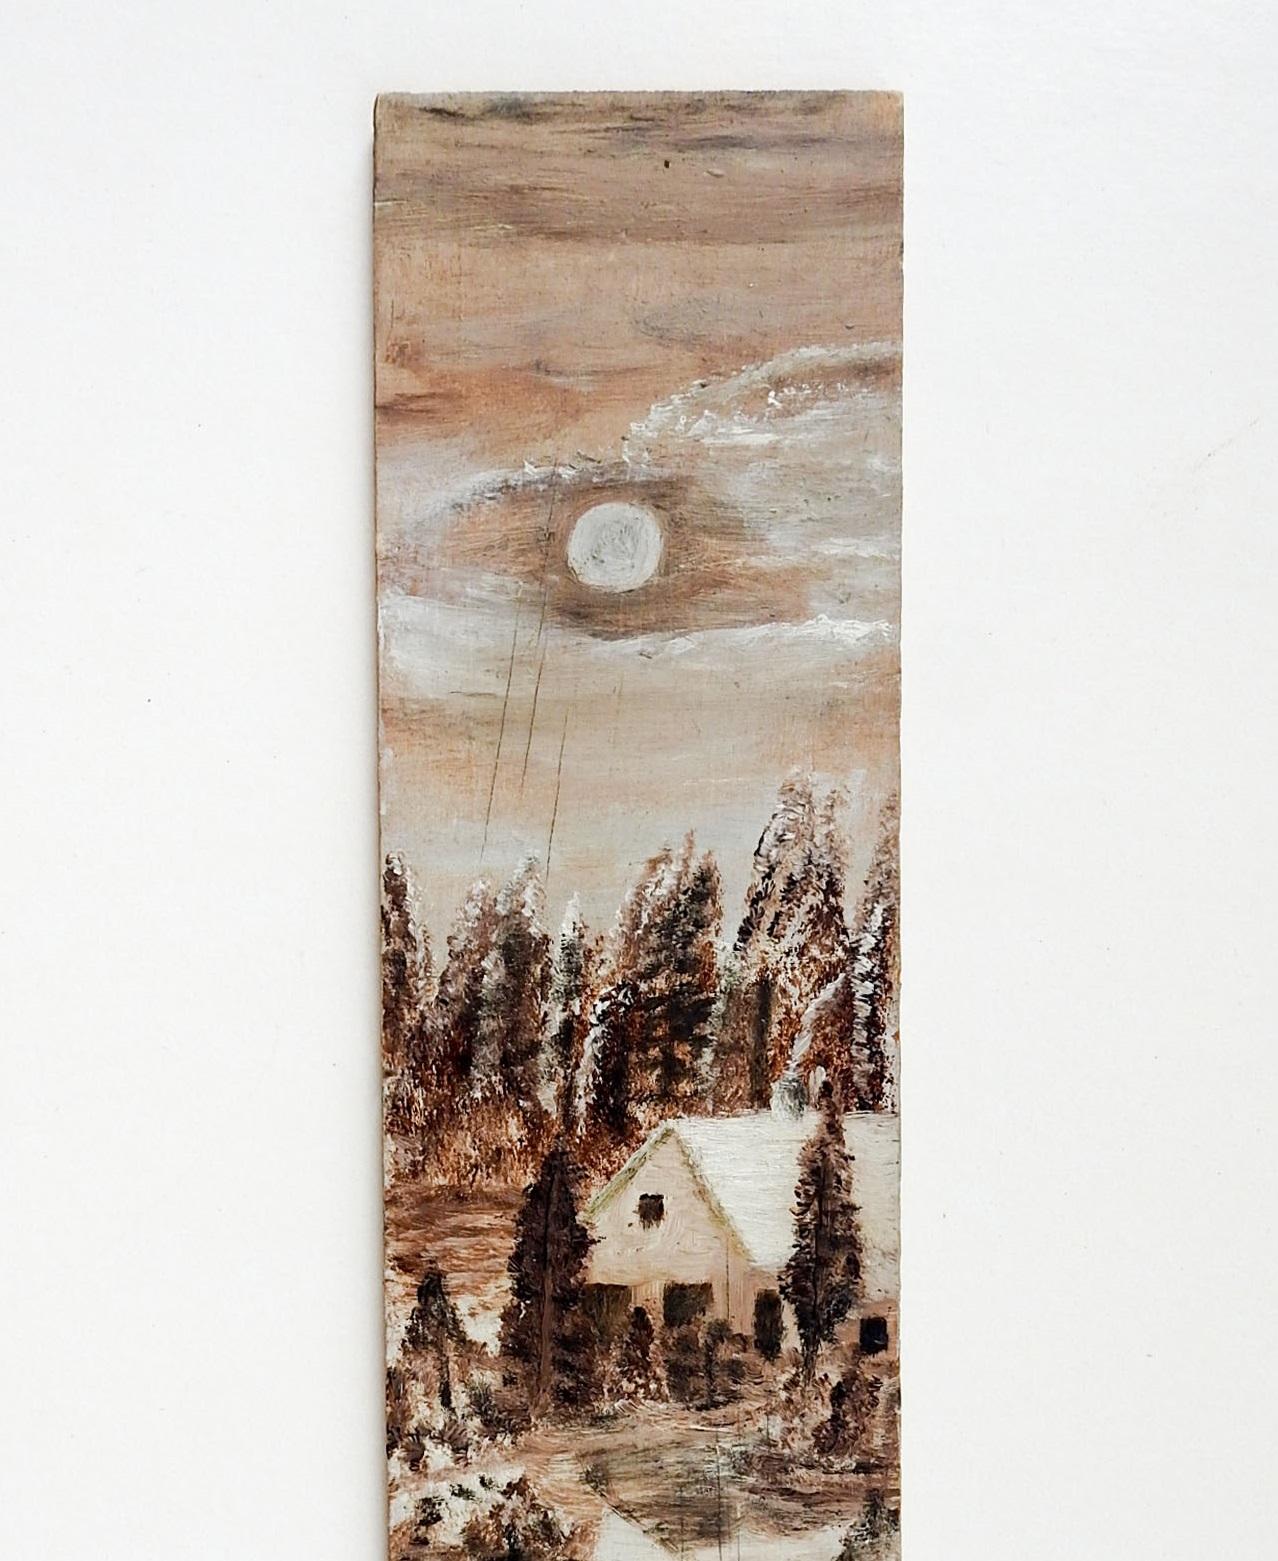 Antique circa 1915 huile sur panneau de bois peinture folklorique d'hiver scène de cabane forestière, le bois provient d'une vieille caisse de tabac. Non signée. Non encadré, usure des bords.